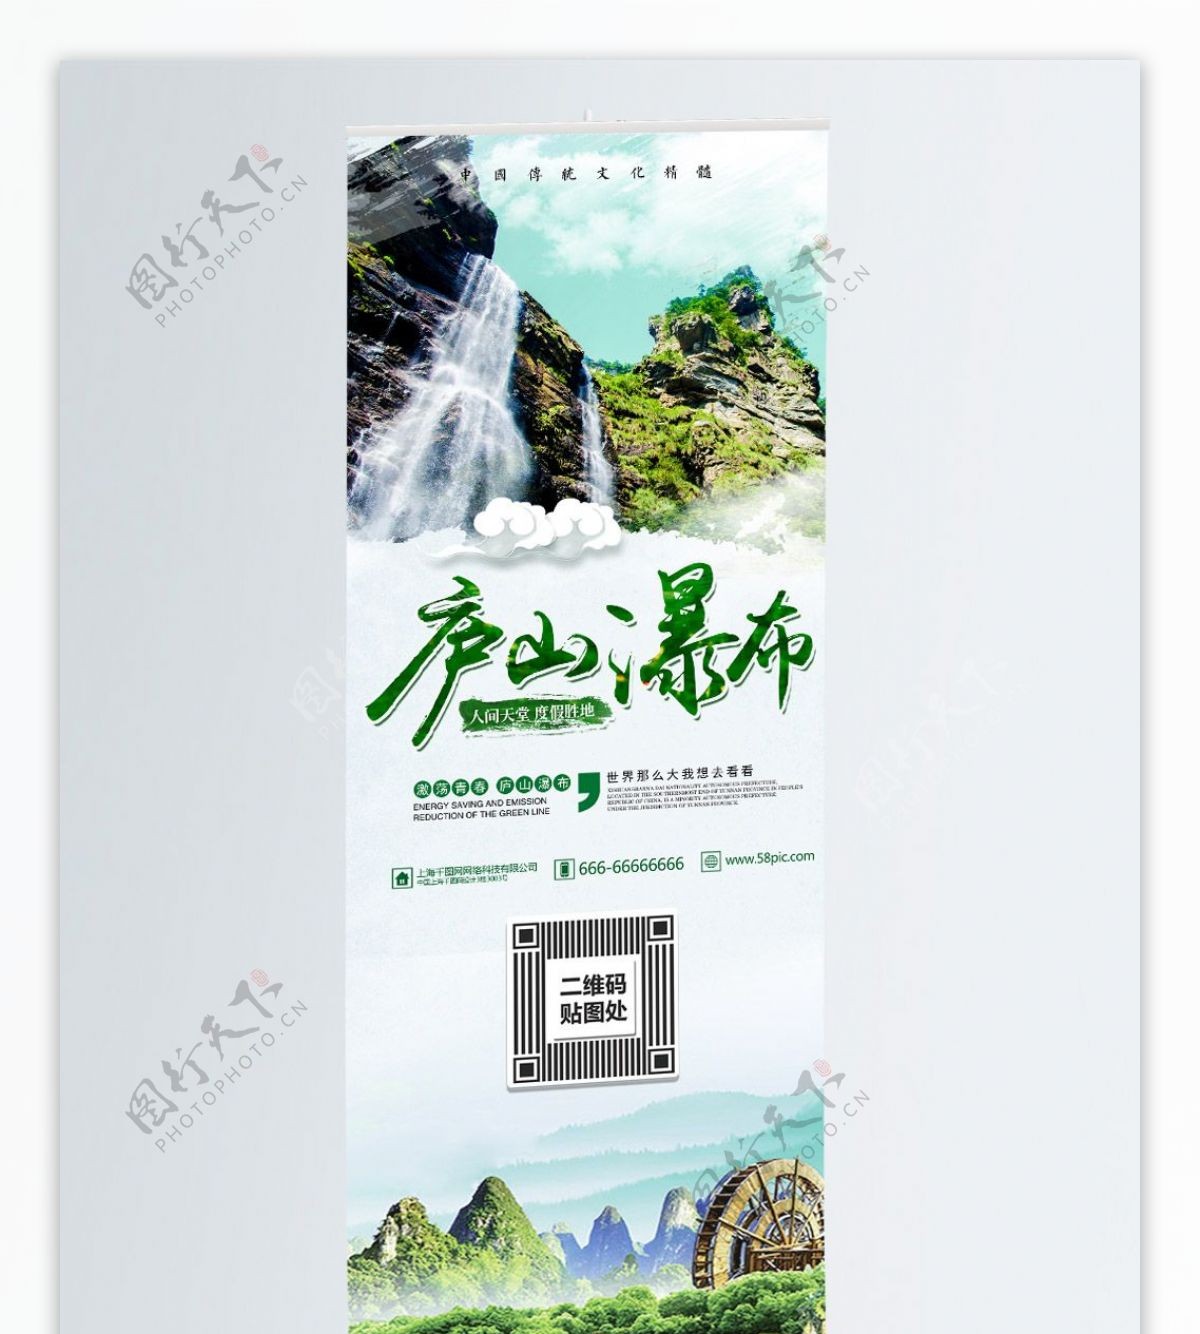 绿色清新旅游庐山瀑布宣传展架